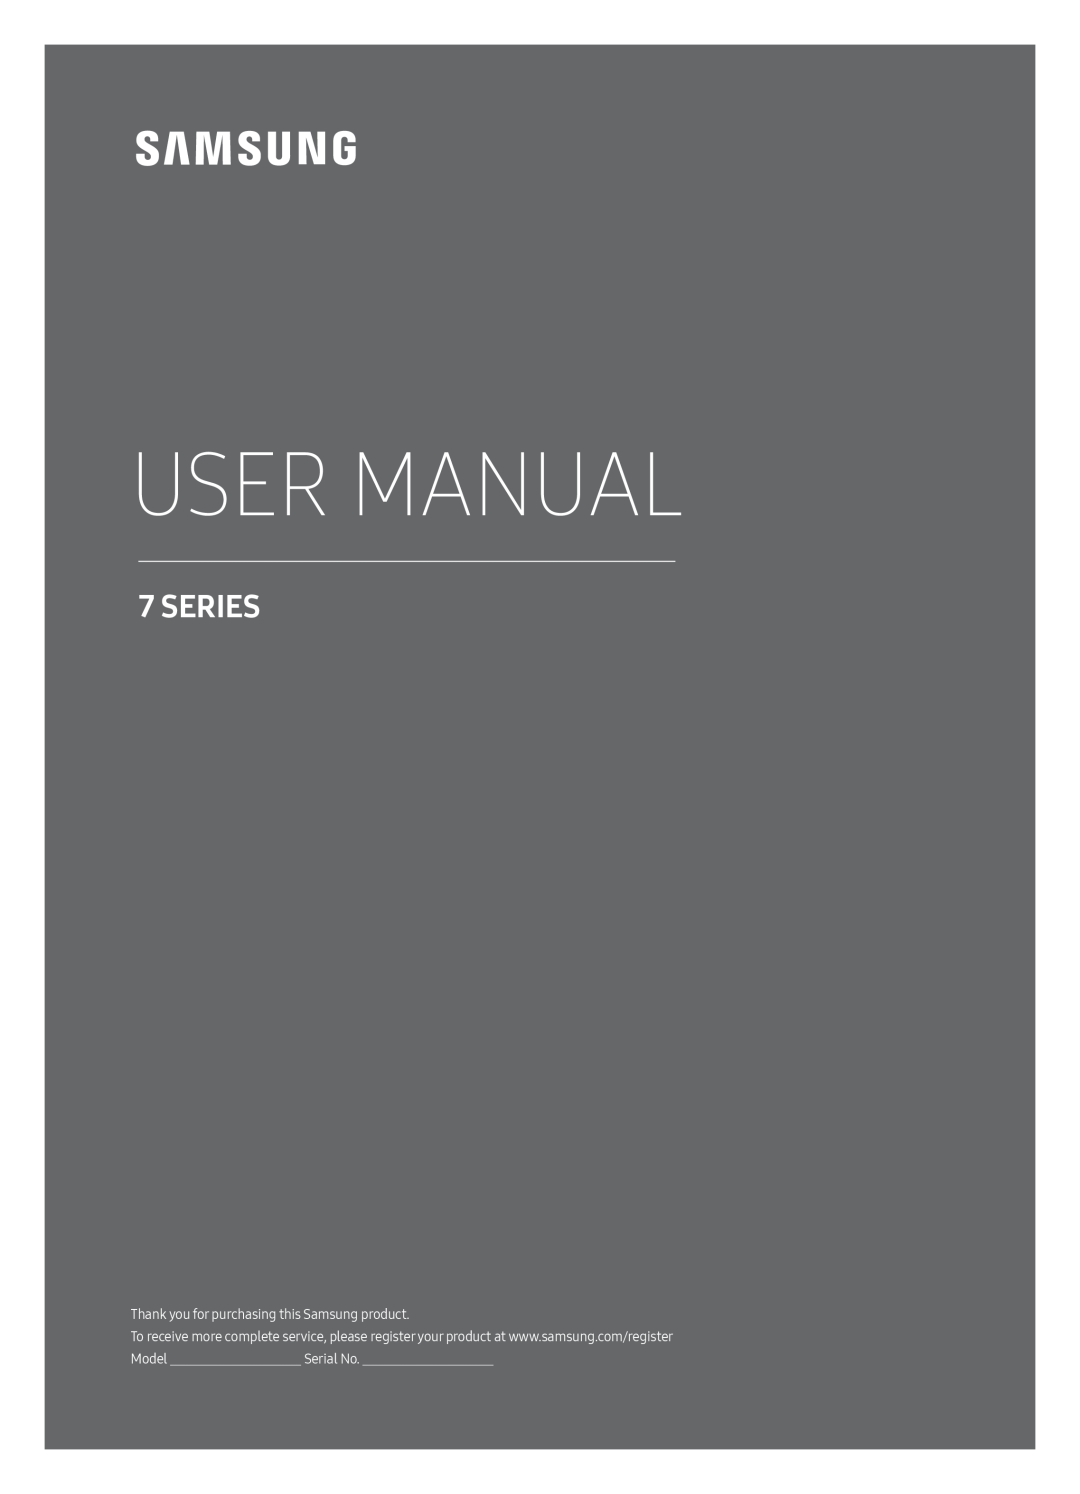 Samsung UE49MU7009TXZG, UE55MU7009TXZG, UE49MU7000TXZG, UE82MU7009TXZG, UE65MU7009TXZG manual User Manual, Series, Serial No 